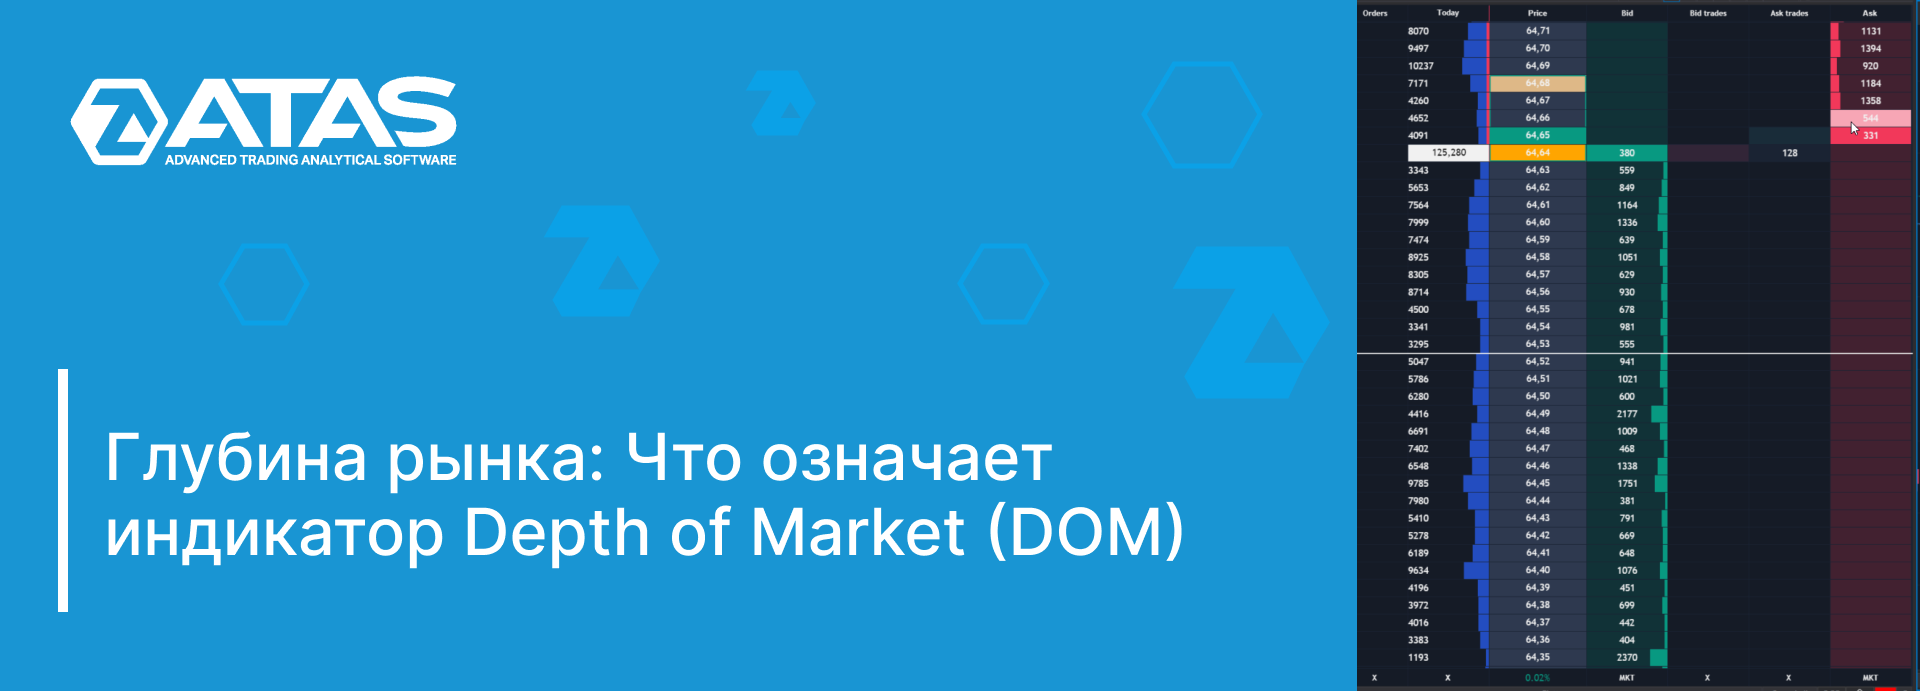 Что означает индикатор Depth of Market (DOM)